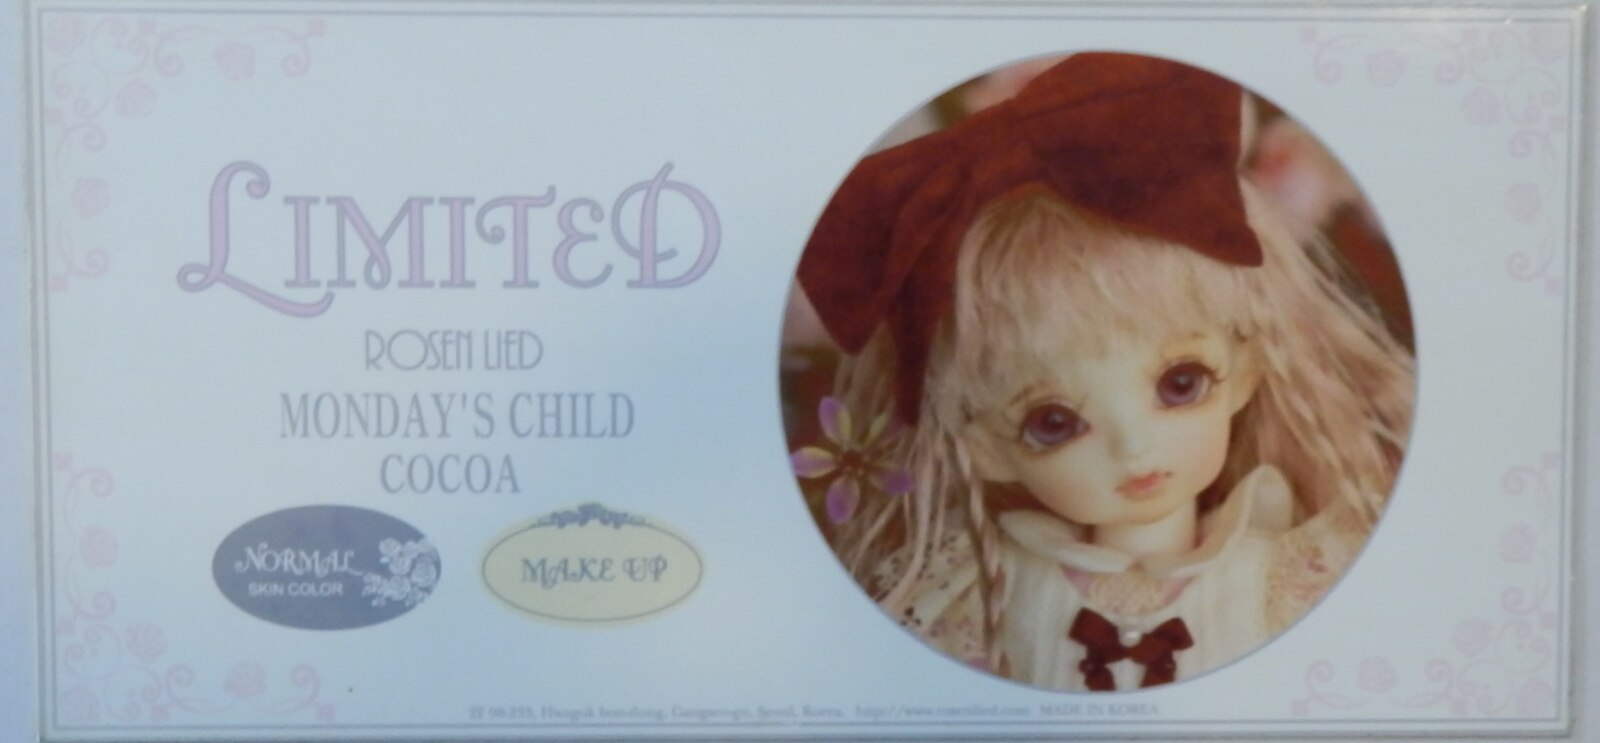 全商品オープニング価格 Rosen Lied Monday's Child Limited Cocoa